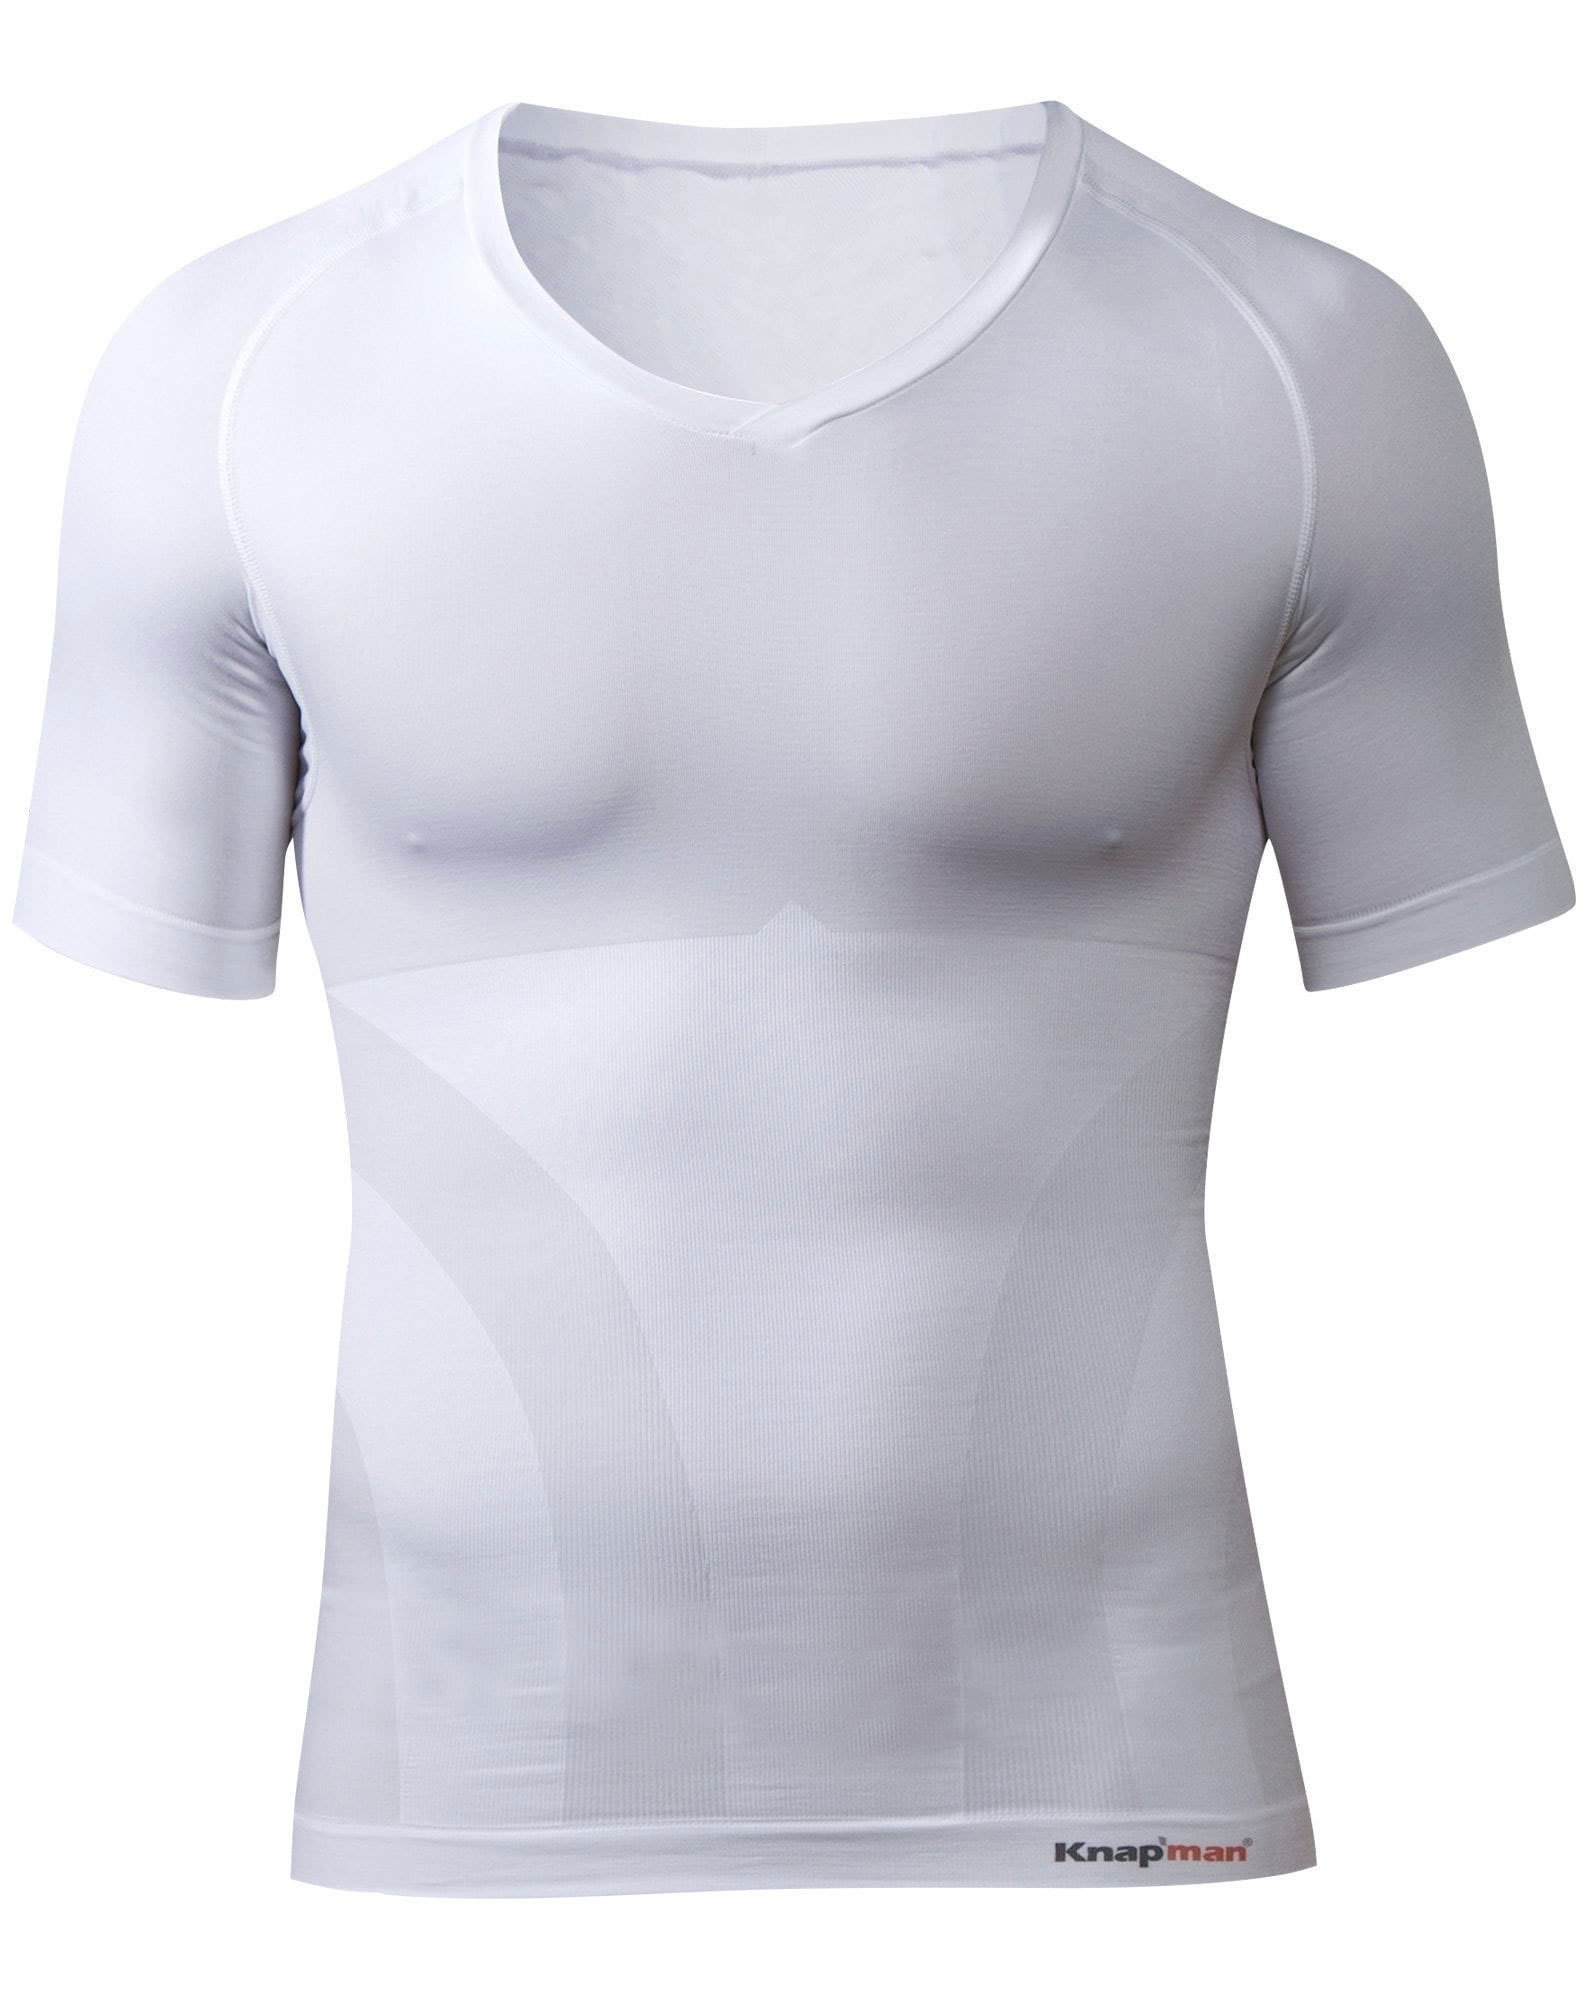 Knap'man Zoned Cotton Comfort V-hals shirt wit